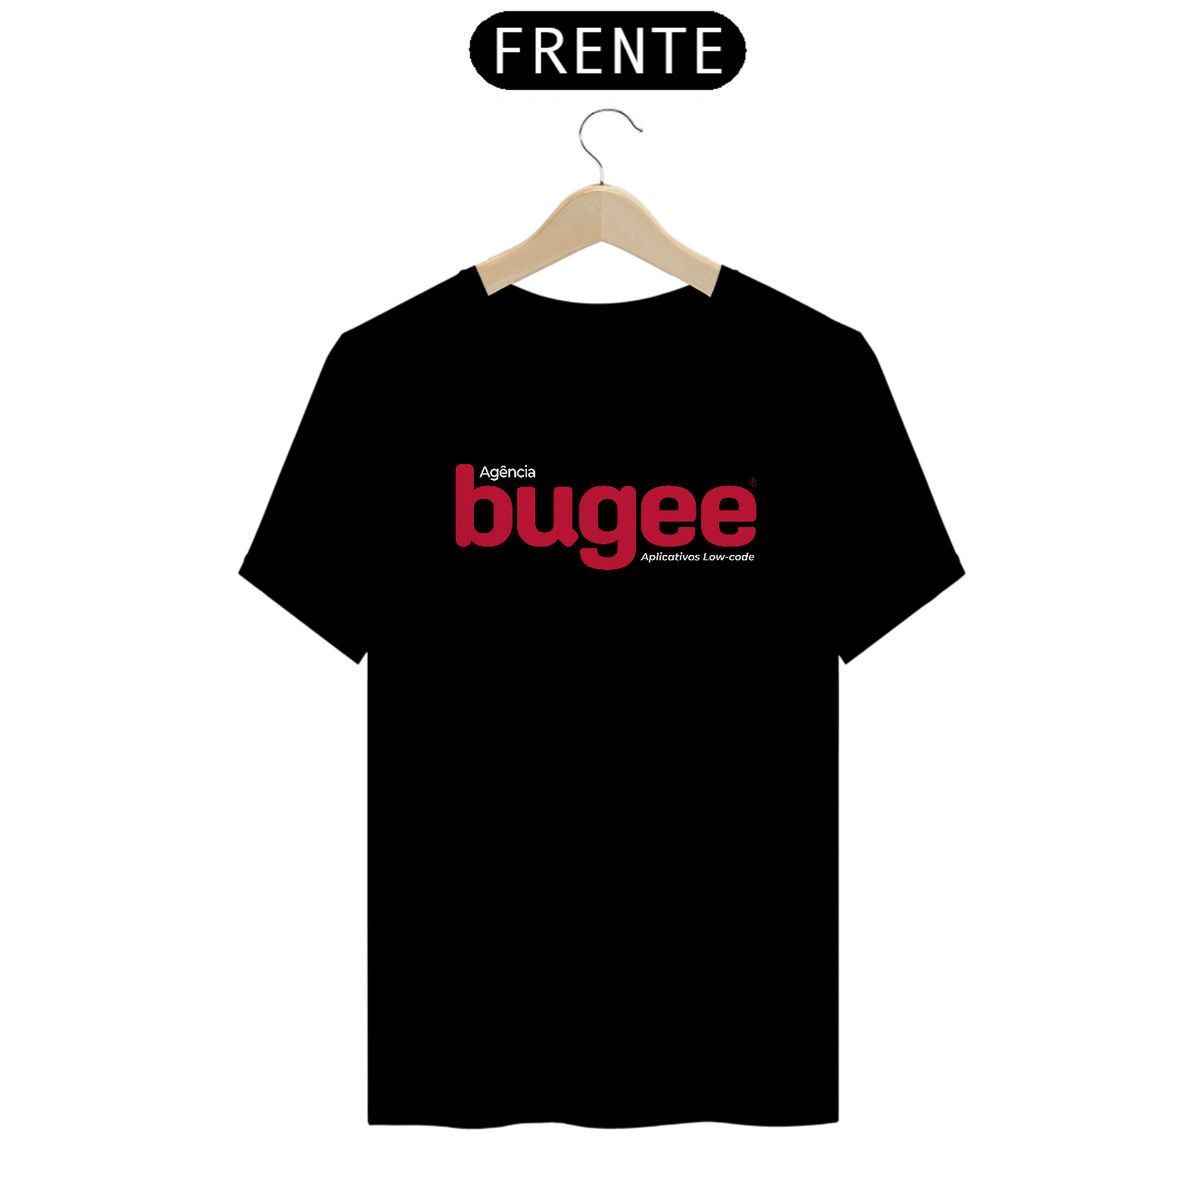 Nome do produto: Bugee